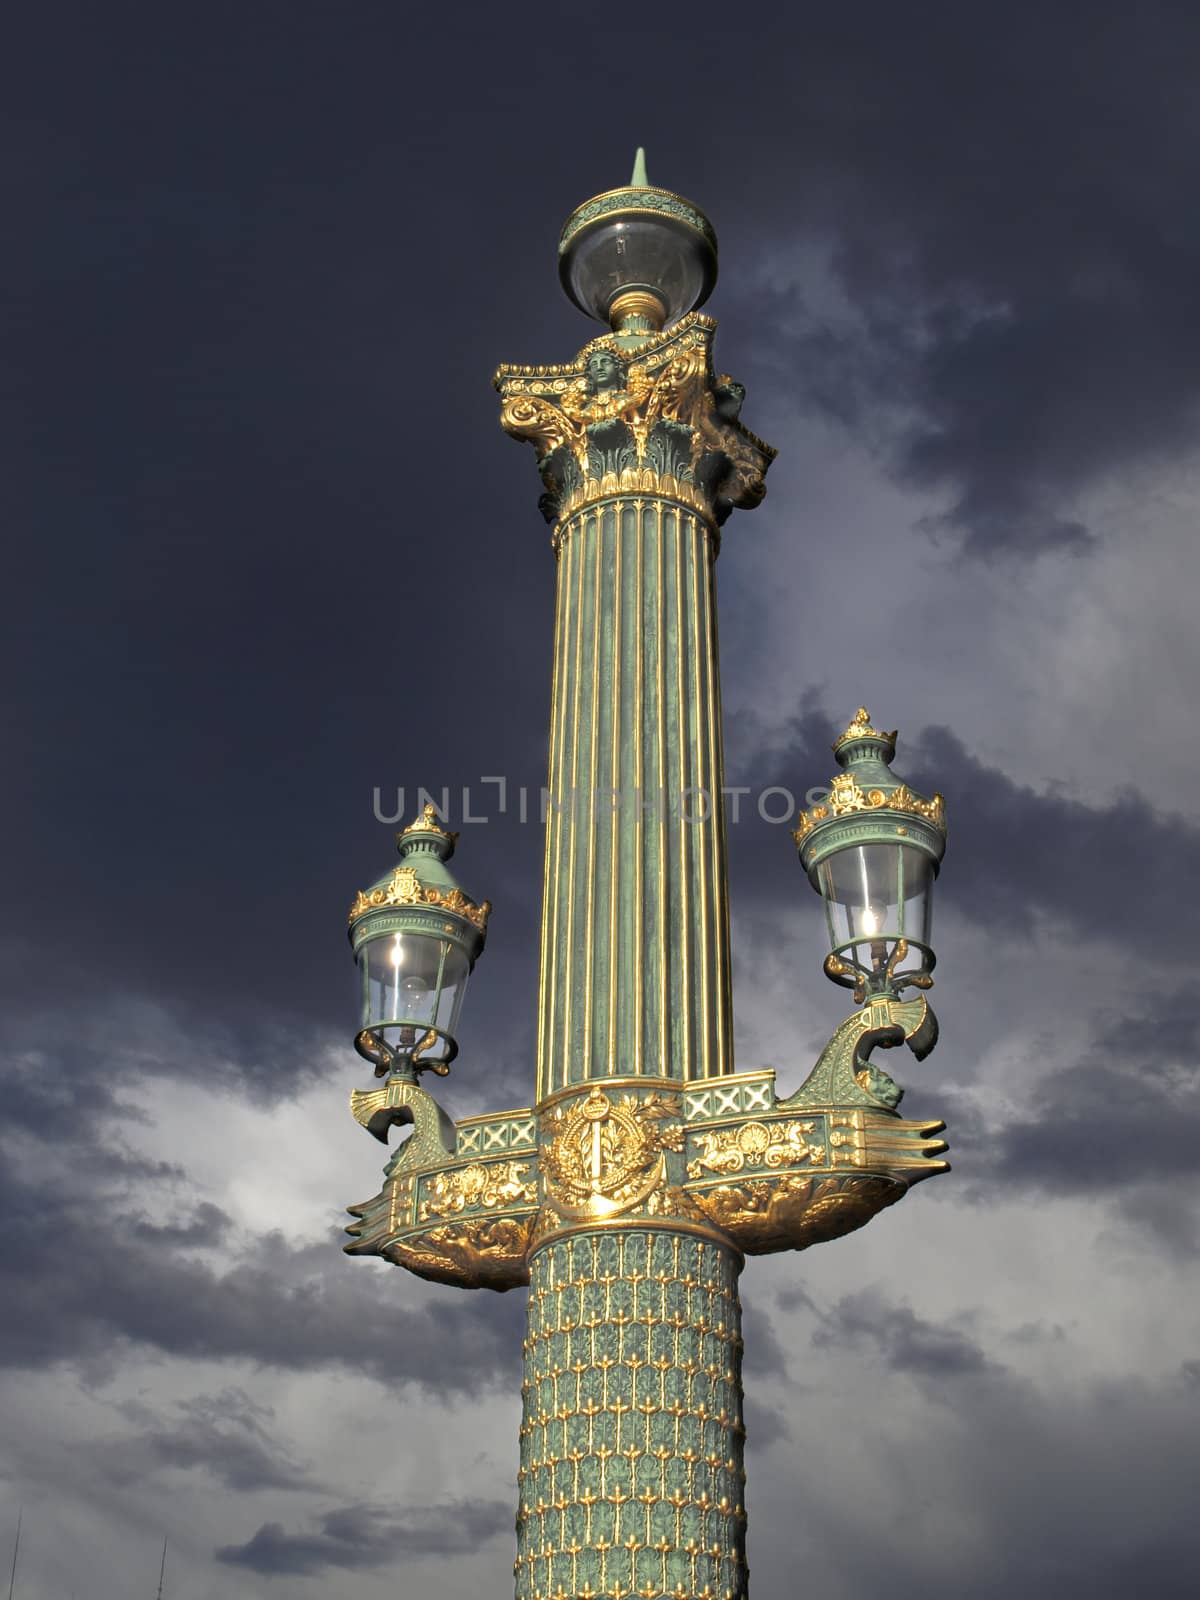 Paris - outdoor golden post lamp by jbouzou